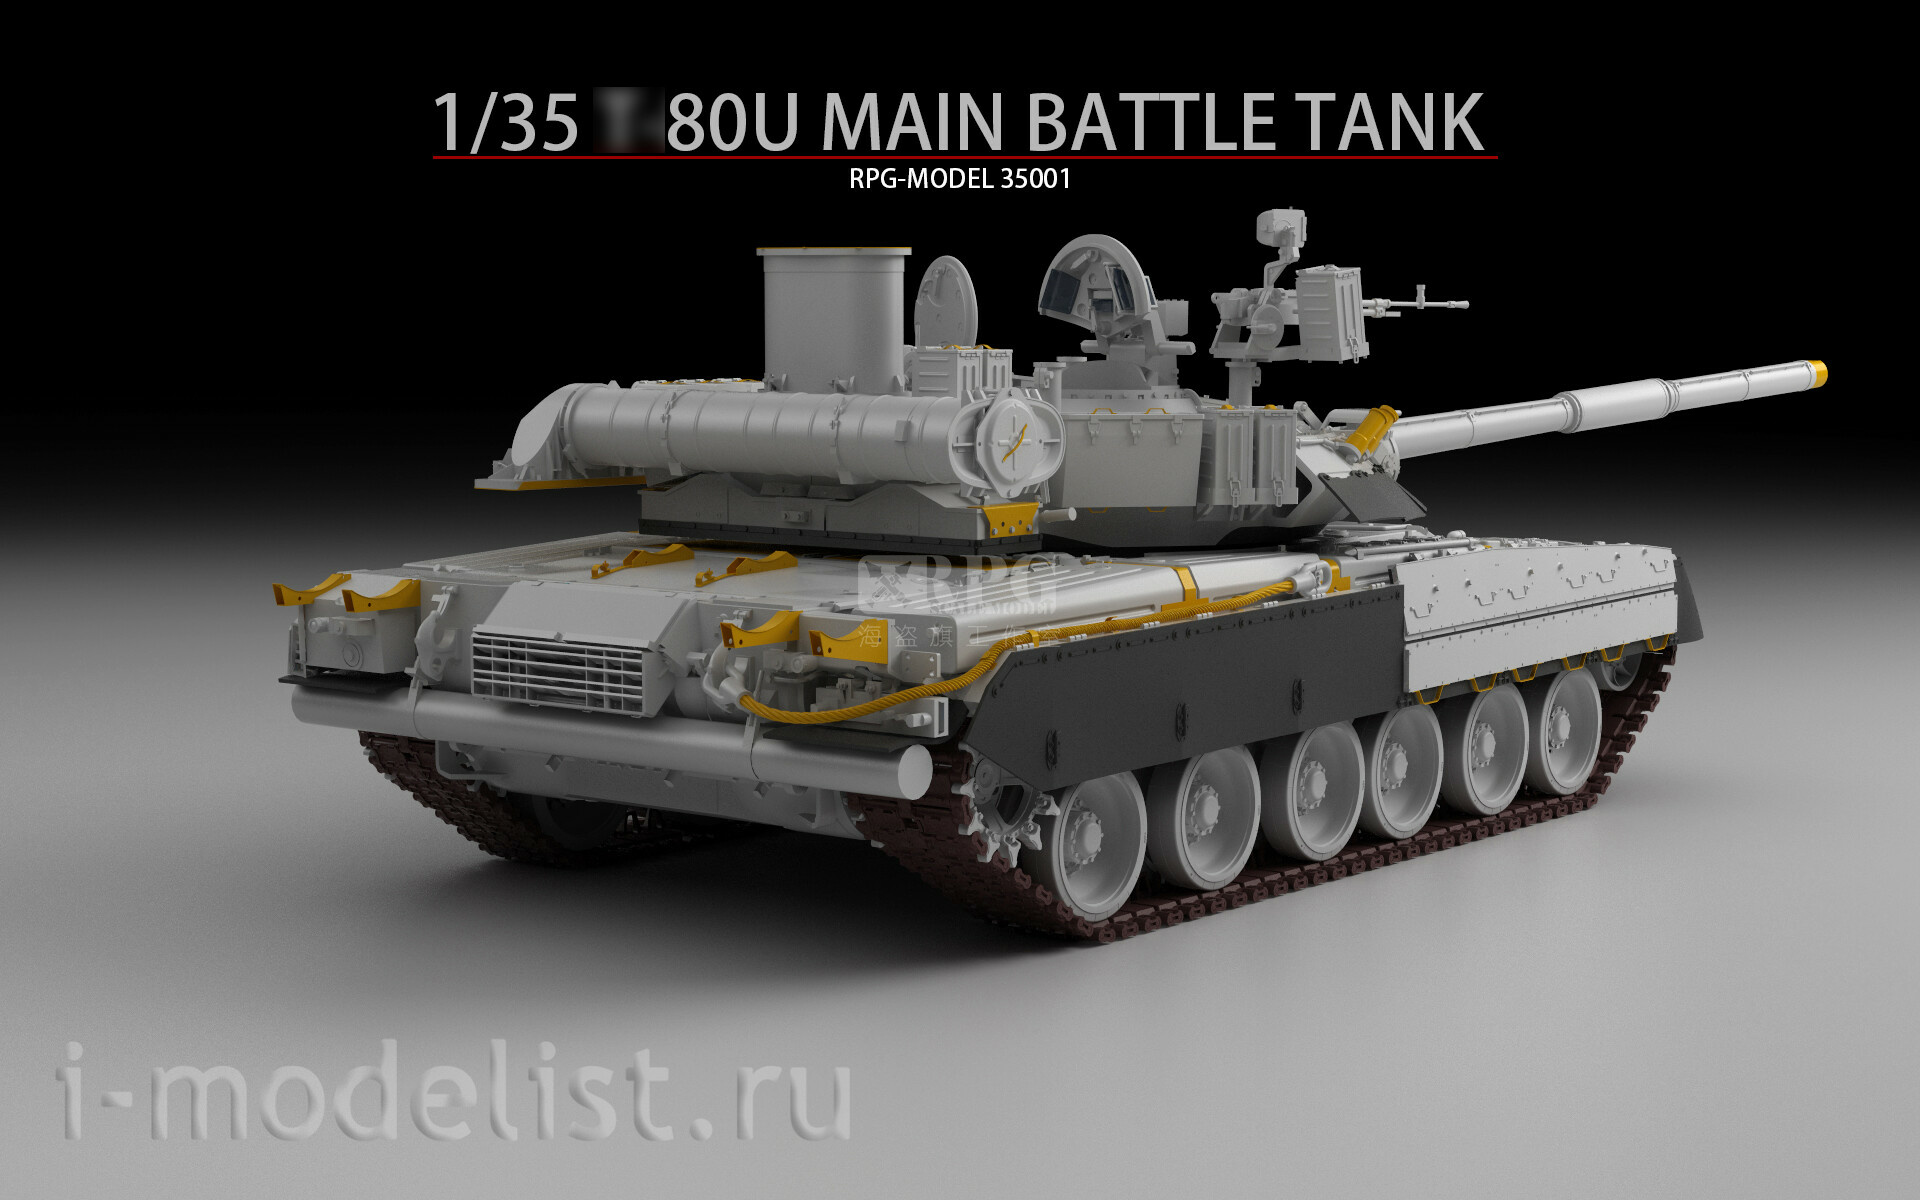 35001A RPG-MODEL 1/35 Tank type 80U + Soldier figures